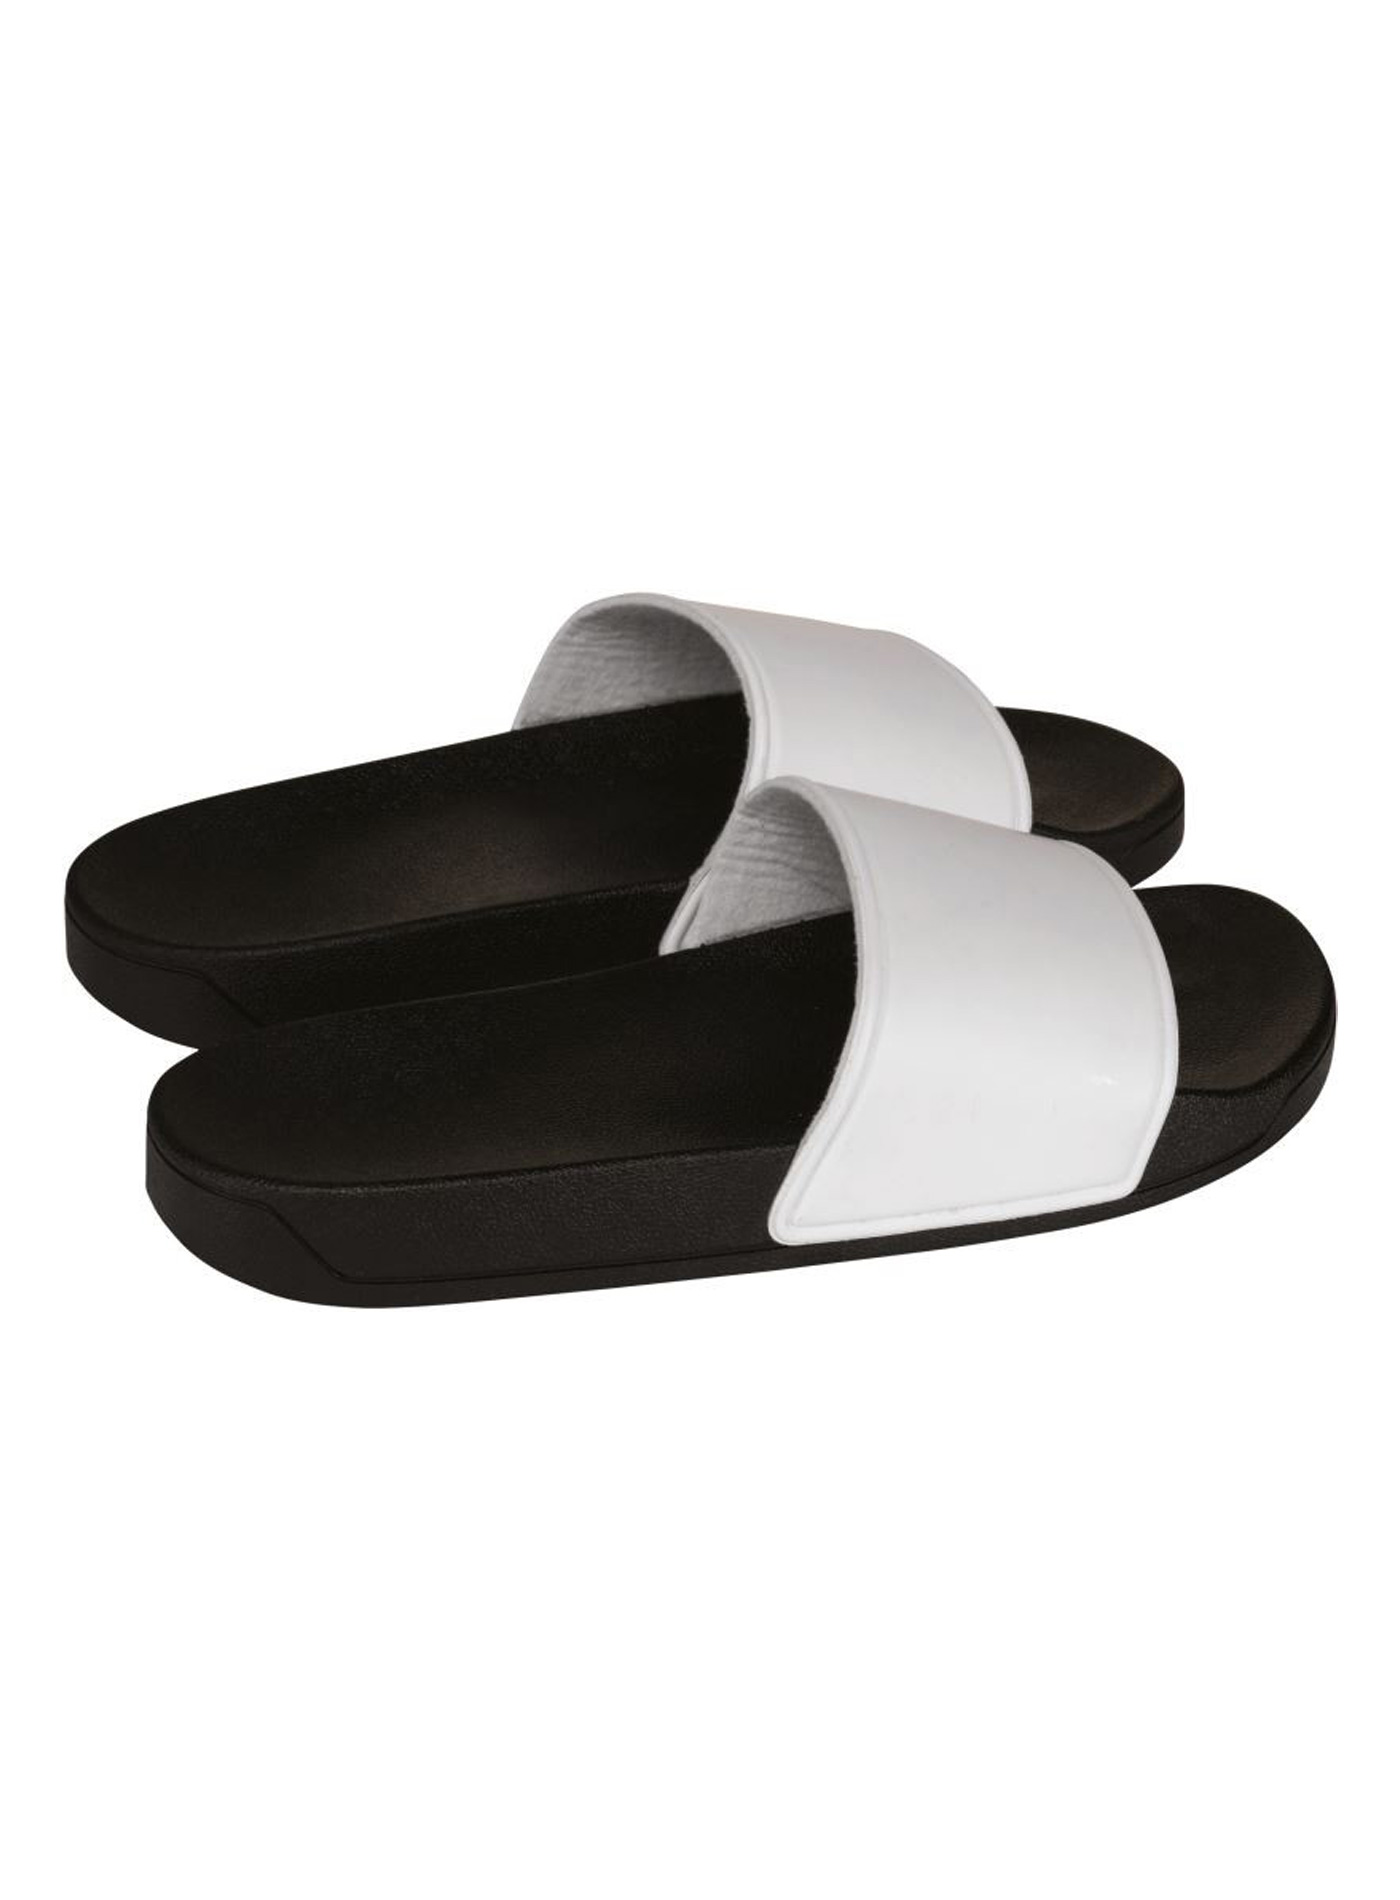 Pantofle Proact - Černá a bílá 35